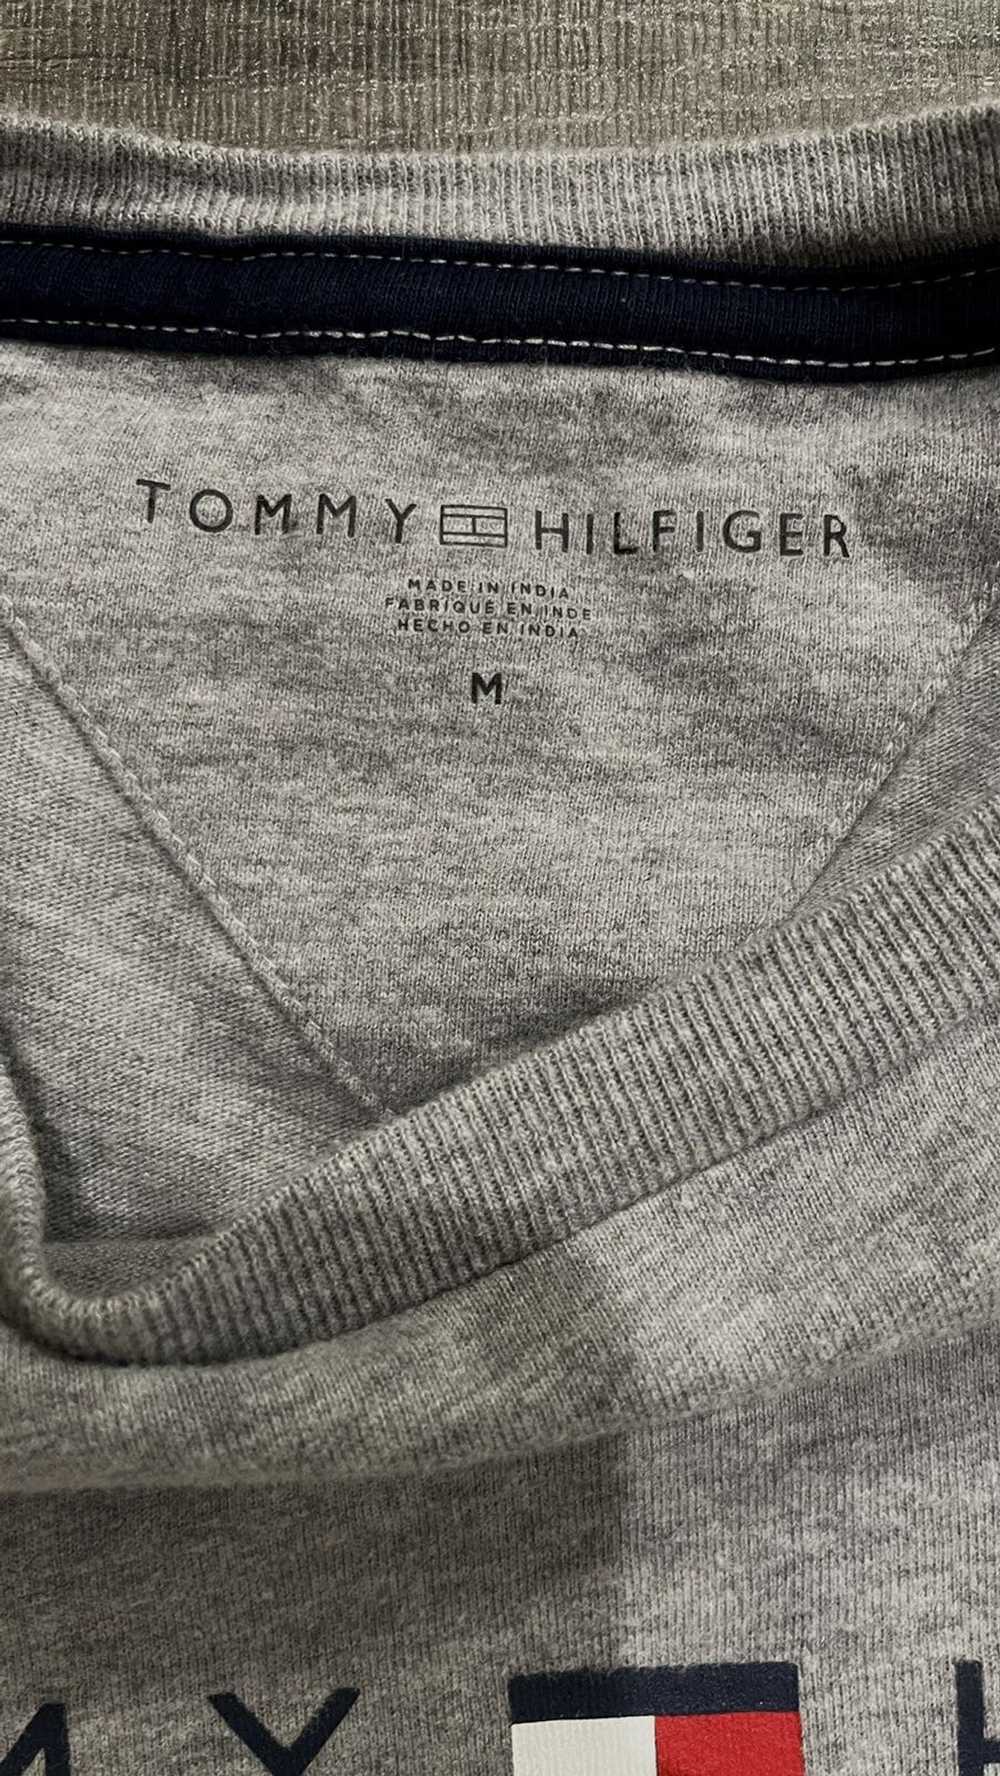 Tommy Hilfiger Tommy Hilfiger Long Sleeve - image 3